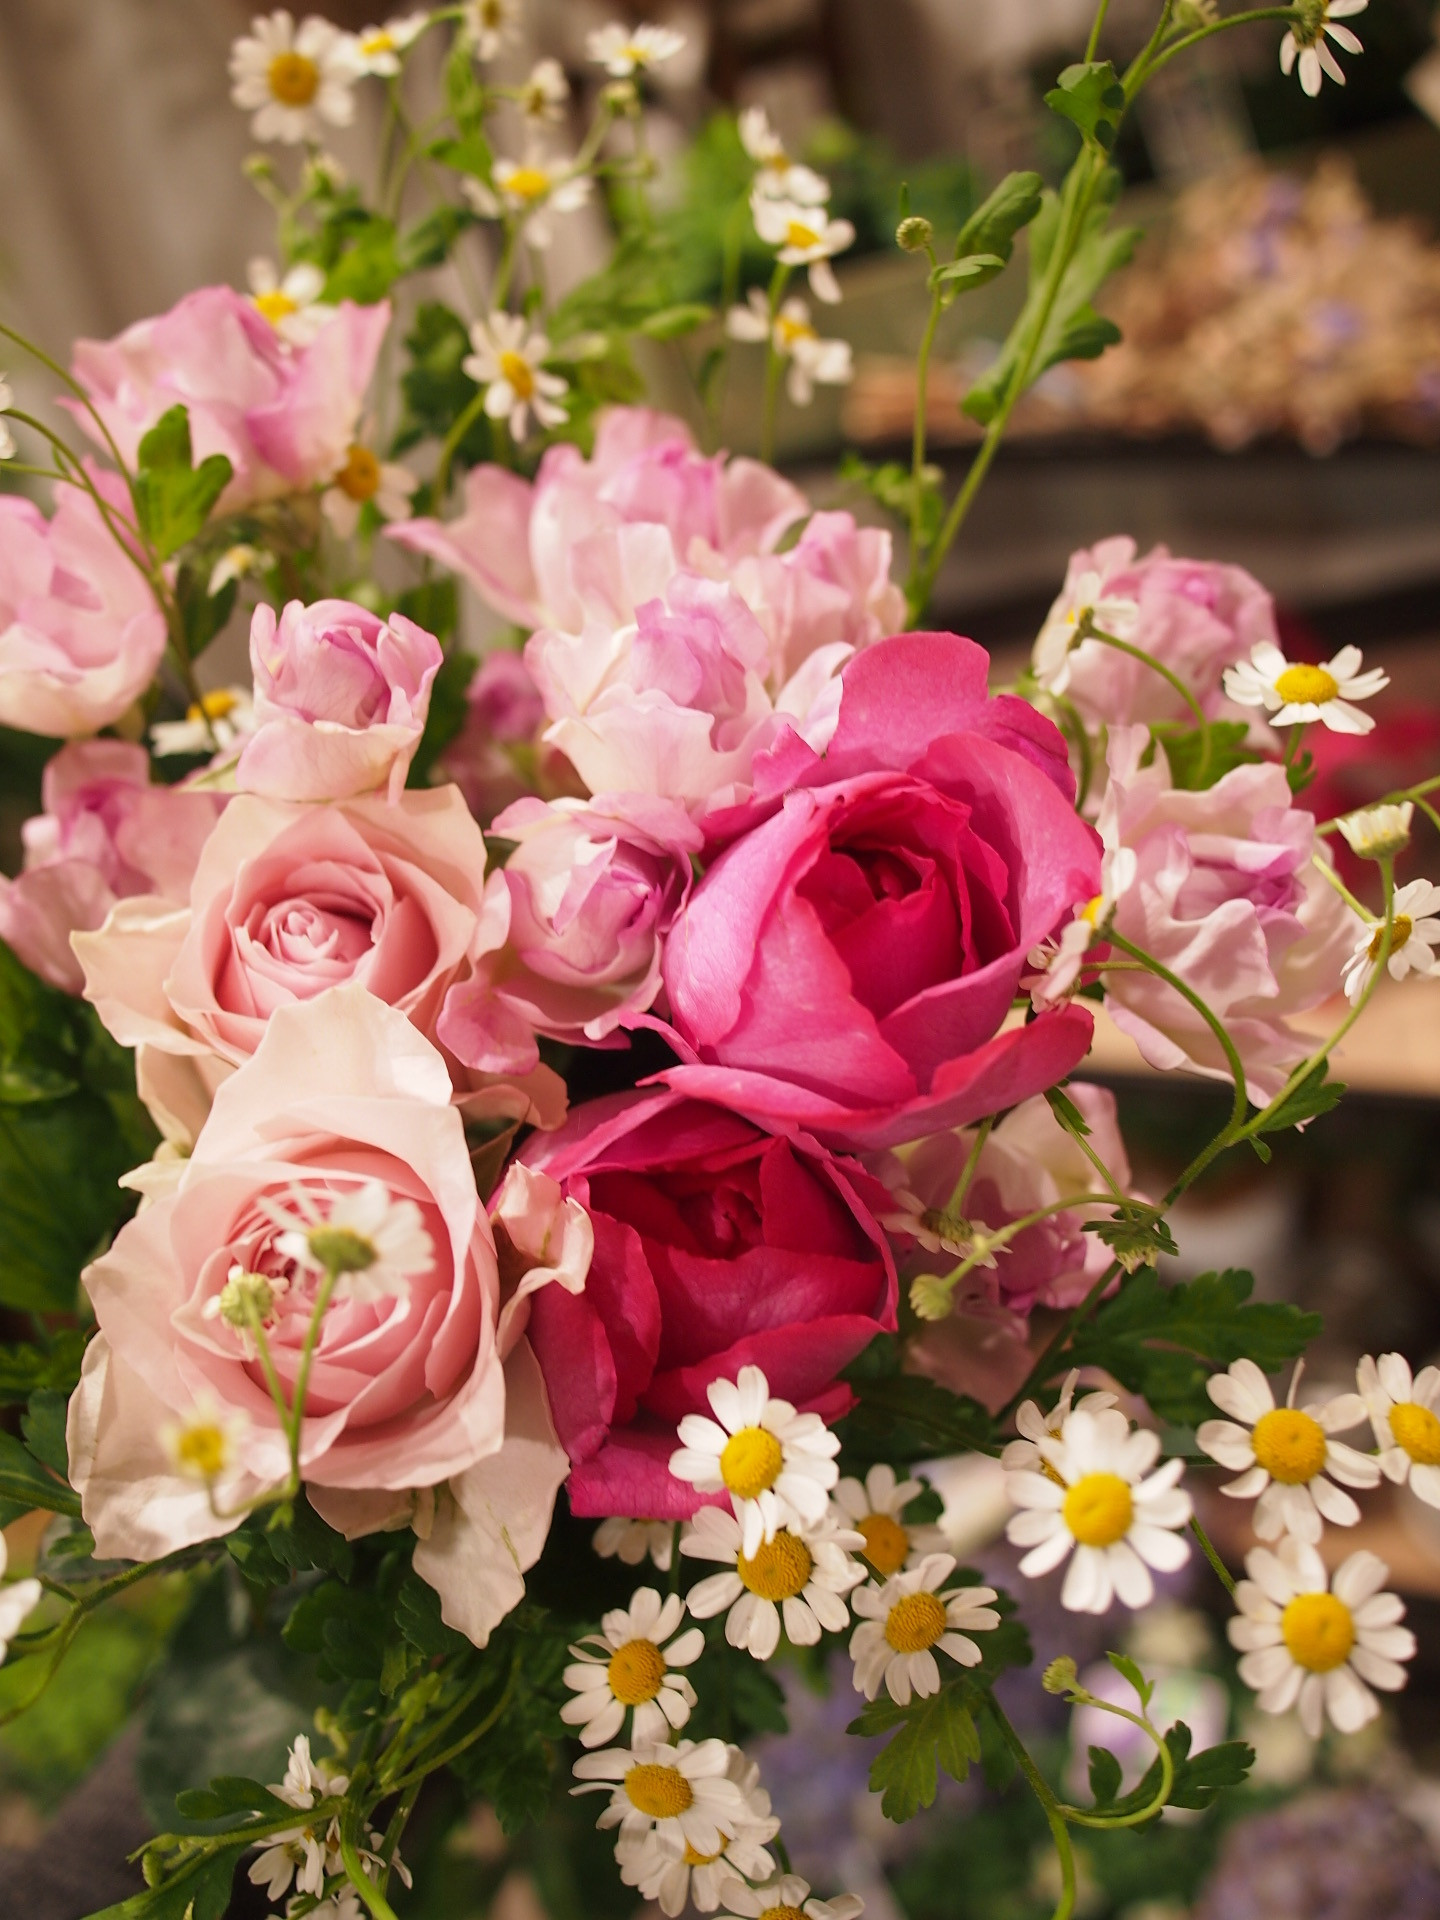 追記 ほっとする時間と香りをお家に 旬のバラの花束販売します 4 11 13 Konohanaya コノハナヤ